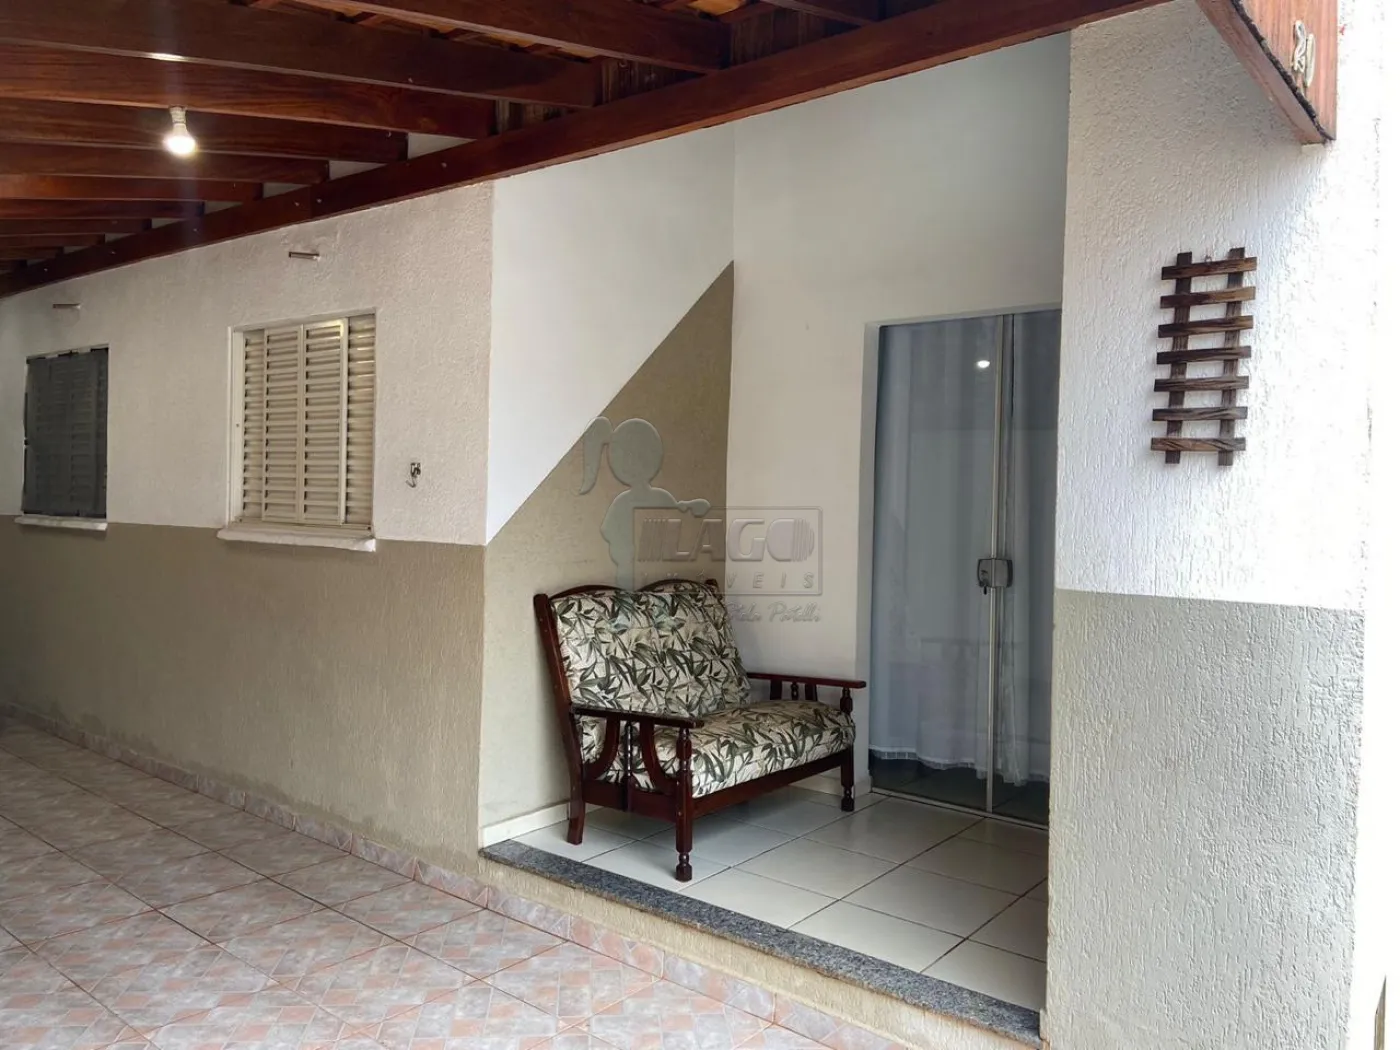 Comprar Casa condomínio / Padrão em Ribeirão Preto R$ 240.000,00 - Foto 15